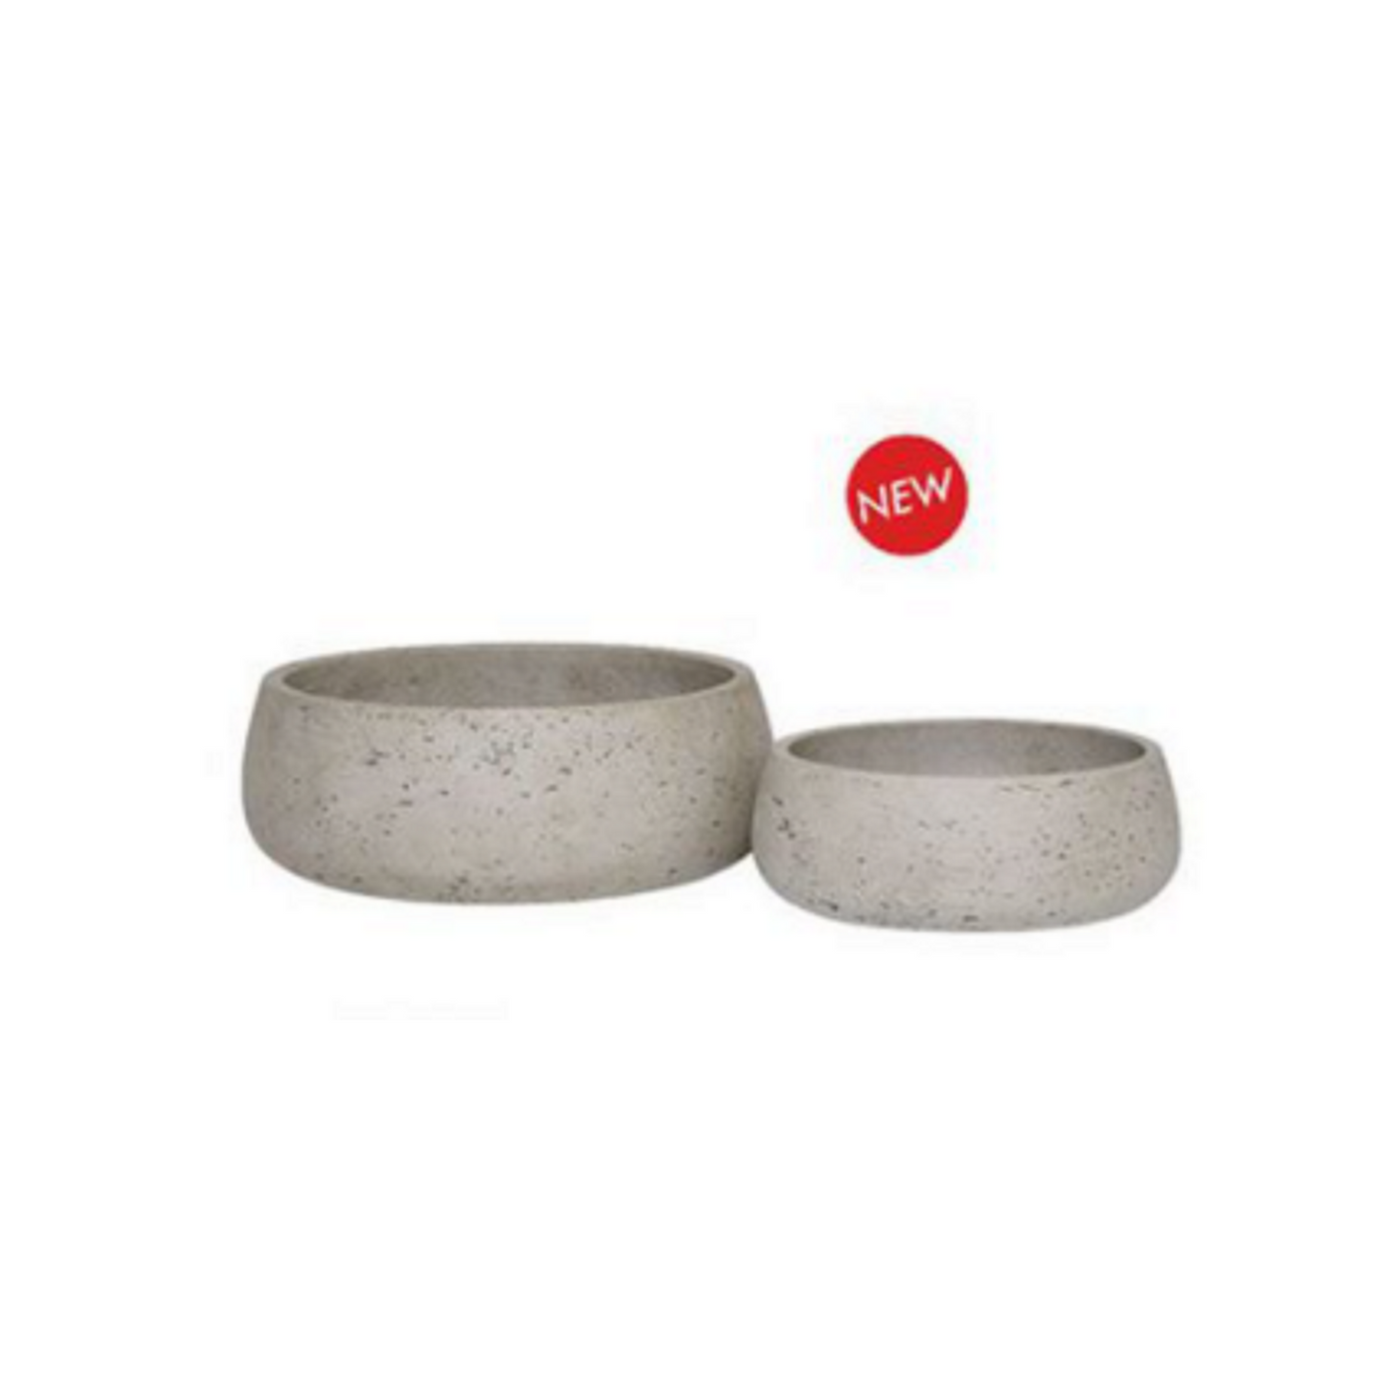 Ro-cement pots (round)